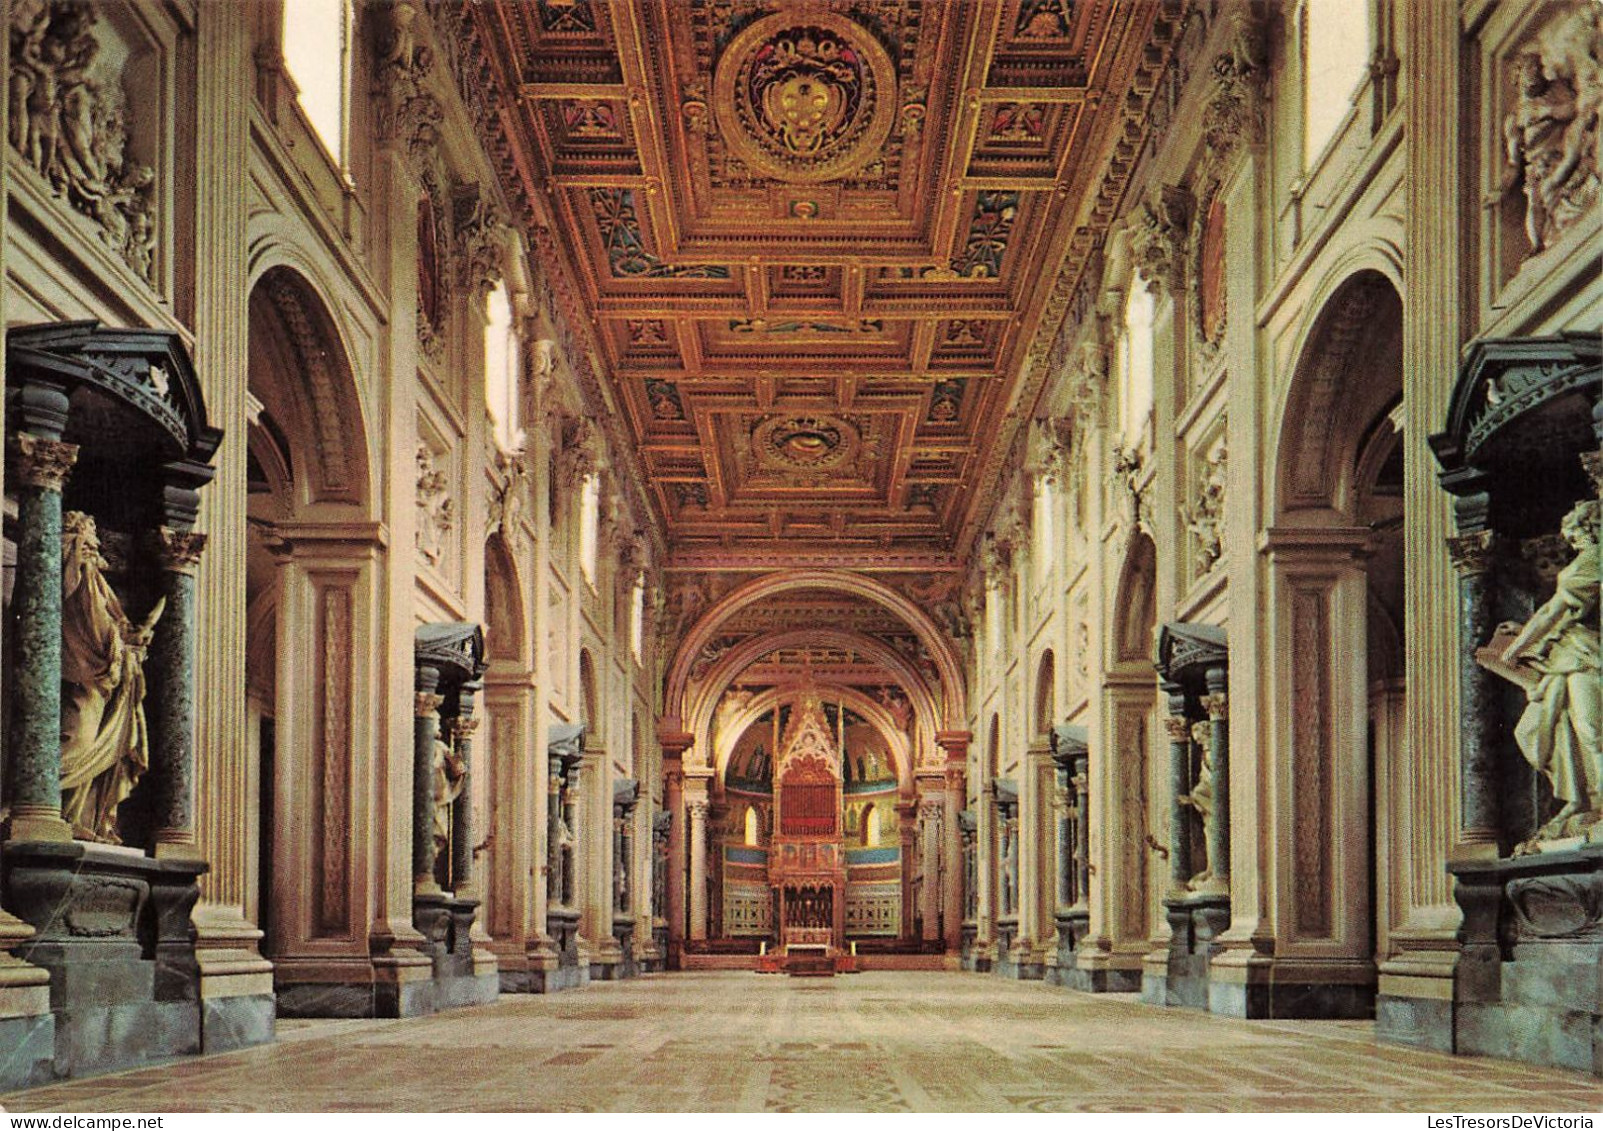 ITALIE - Roma - Basilica S. Giovanni In Laterano - Navata Centrale - Carte Postale - Andere Monumente & Gebäude